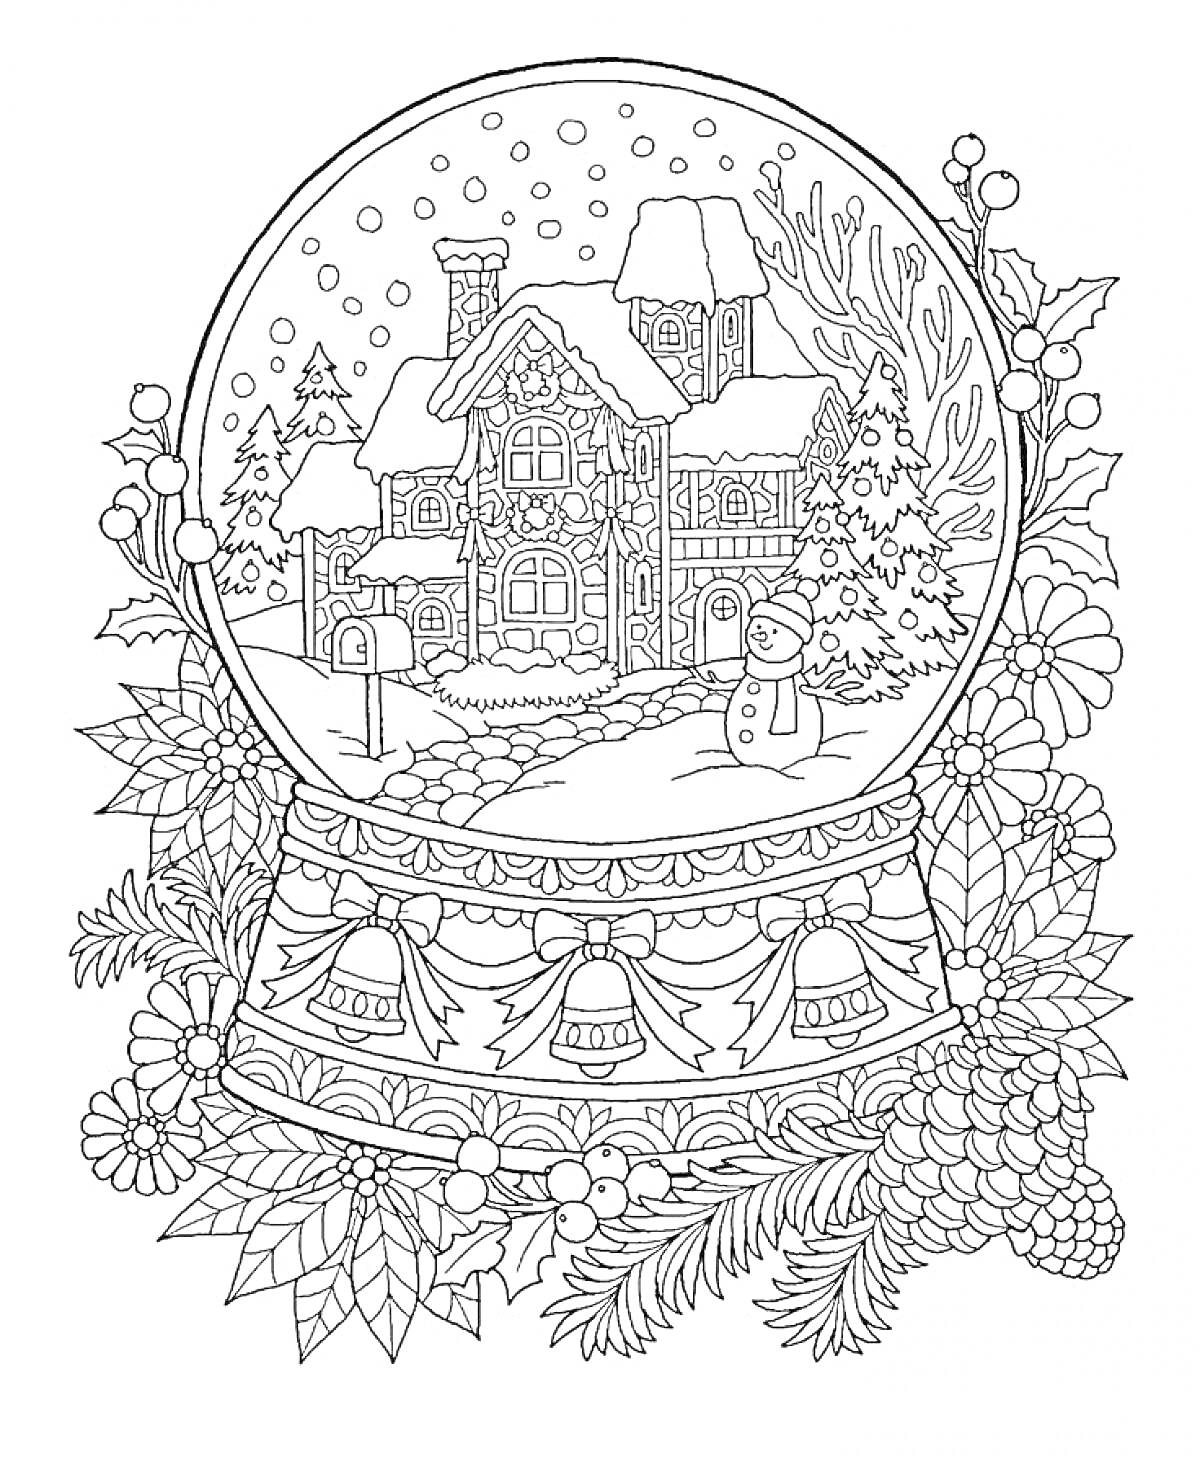 Раскраска Снежный шар с зимним домом, снеговиком, еловыми ветвями, шишками и колокольчиками, окружённый цветами и листьями